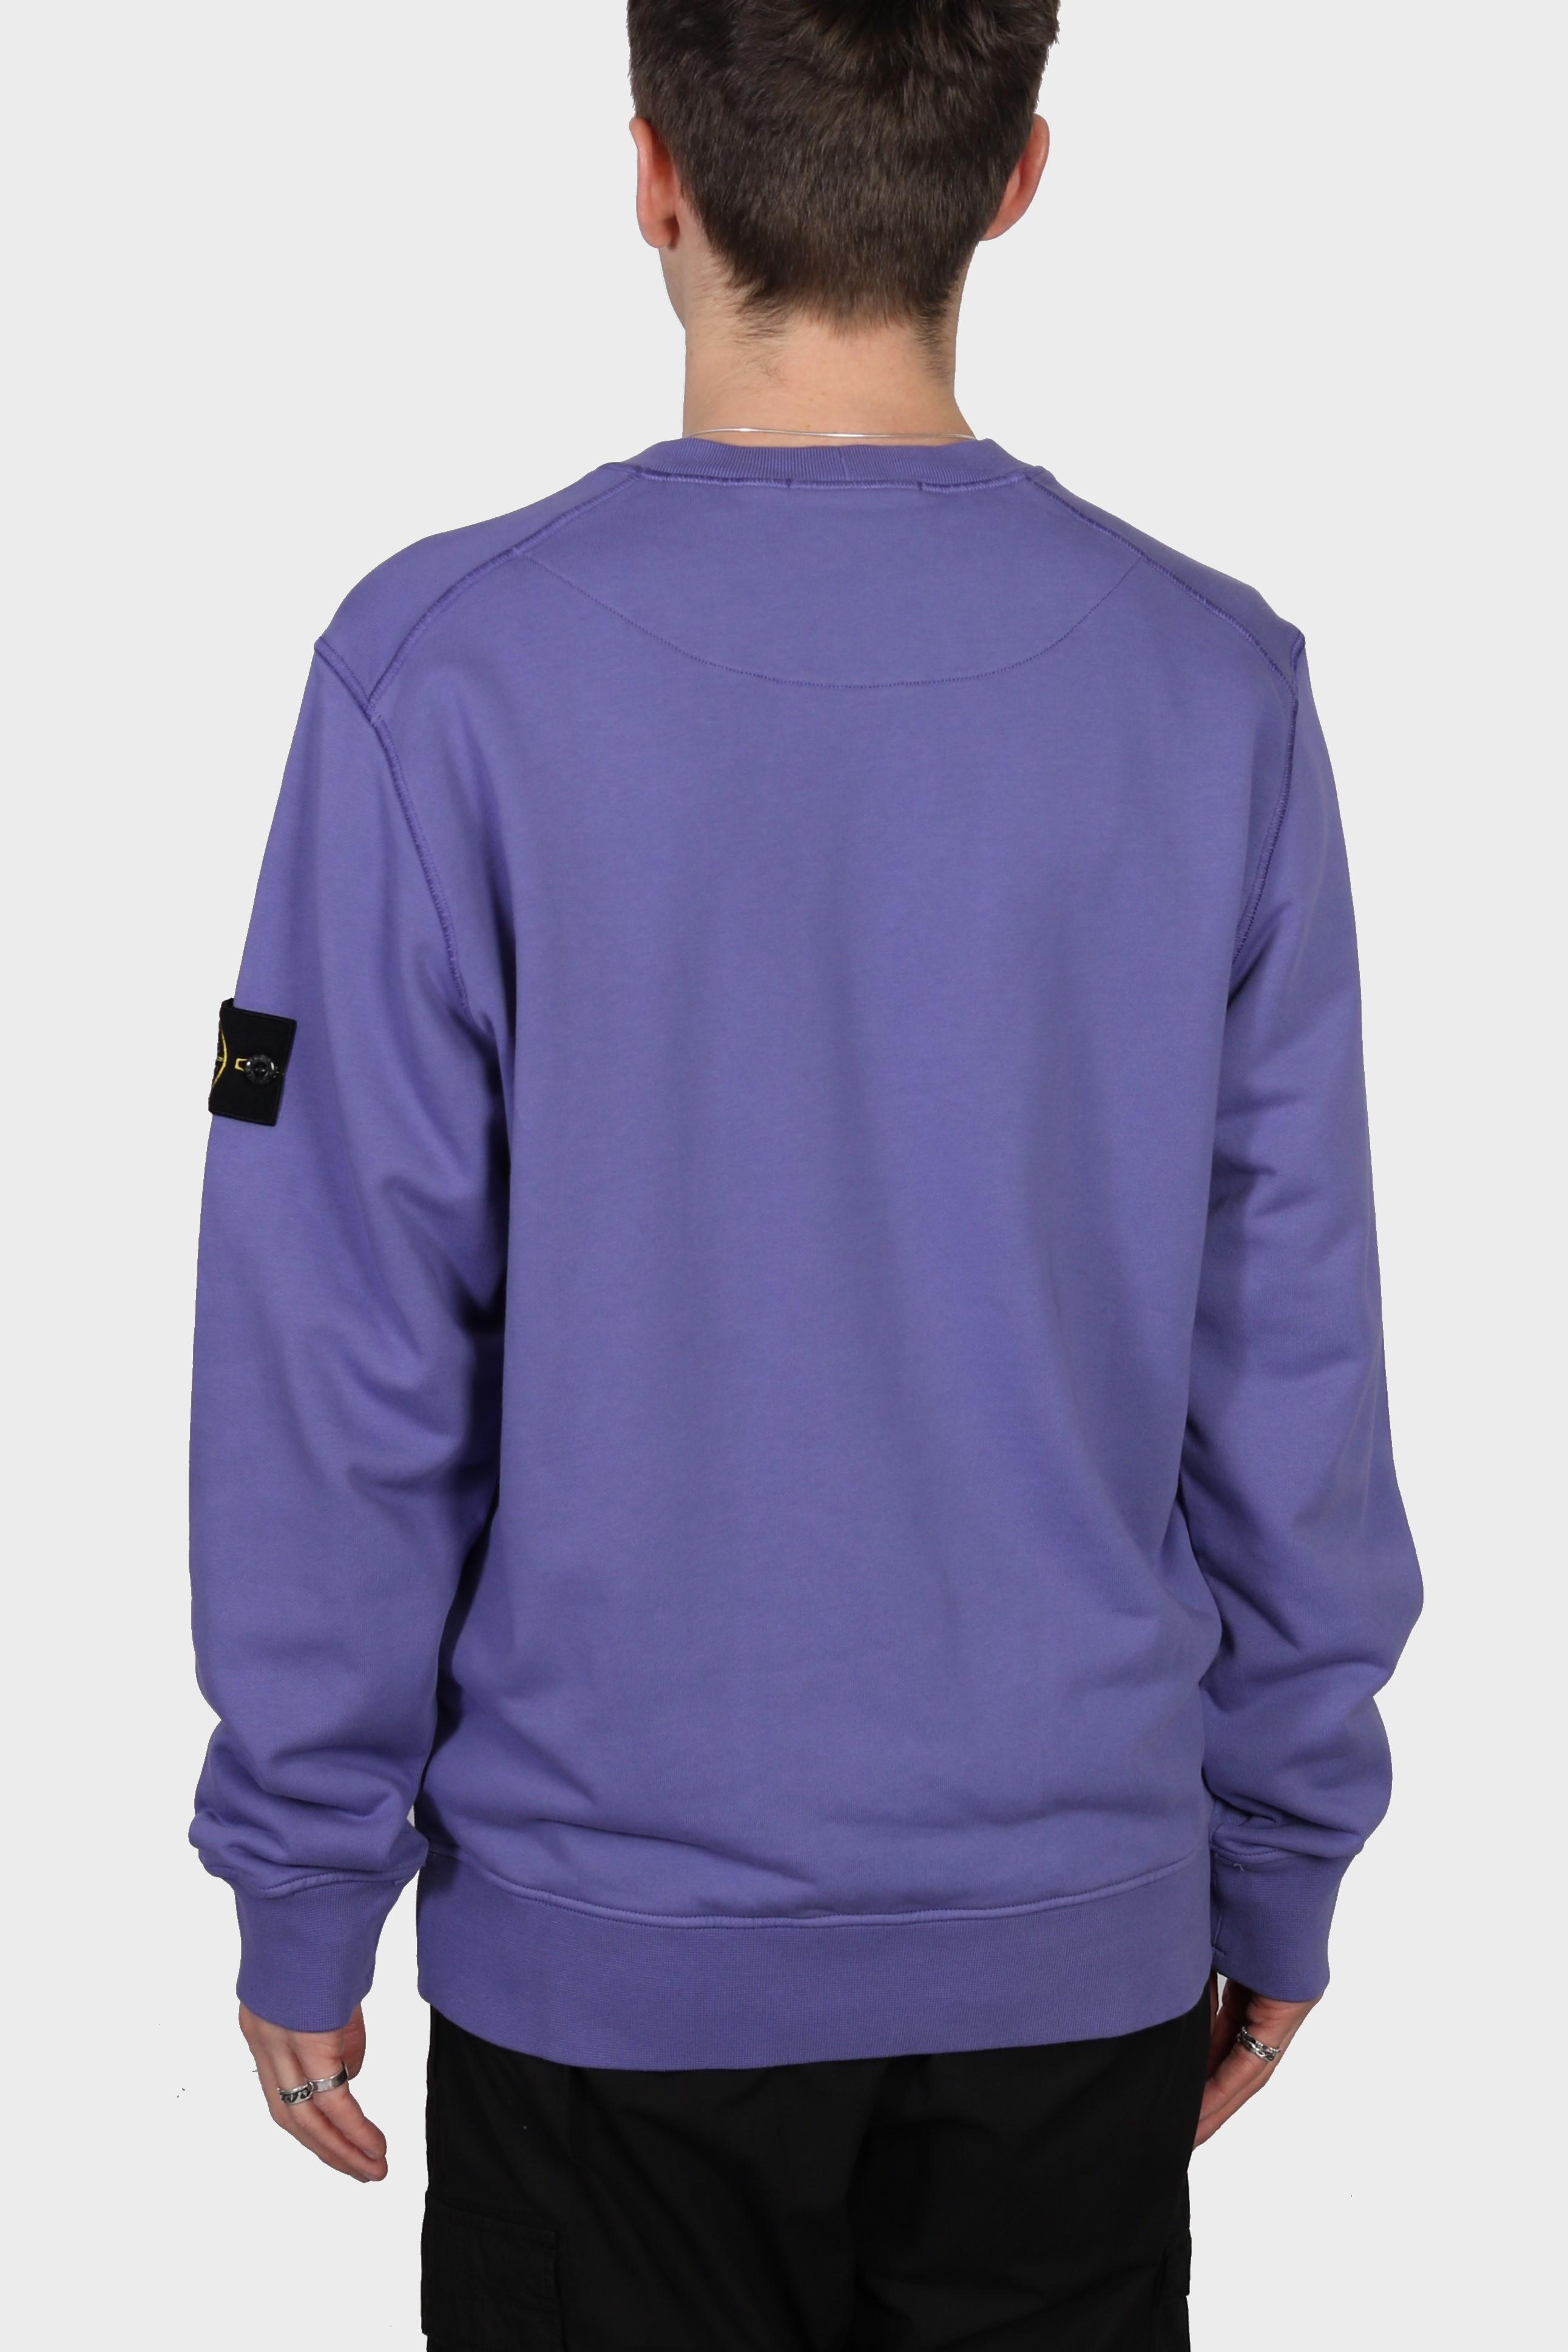 STONE ISLAND Sweatshirt in Lilac 3XL